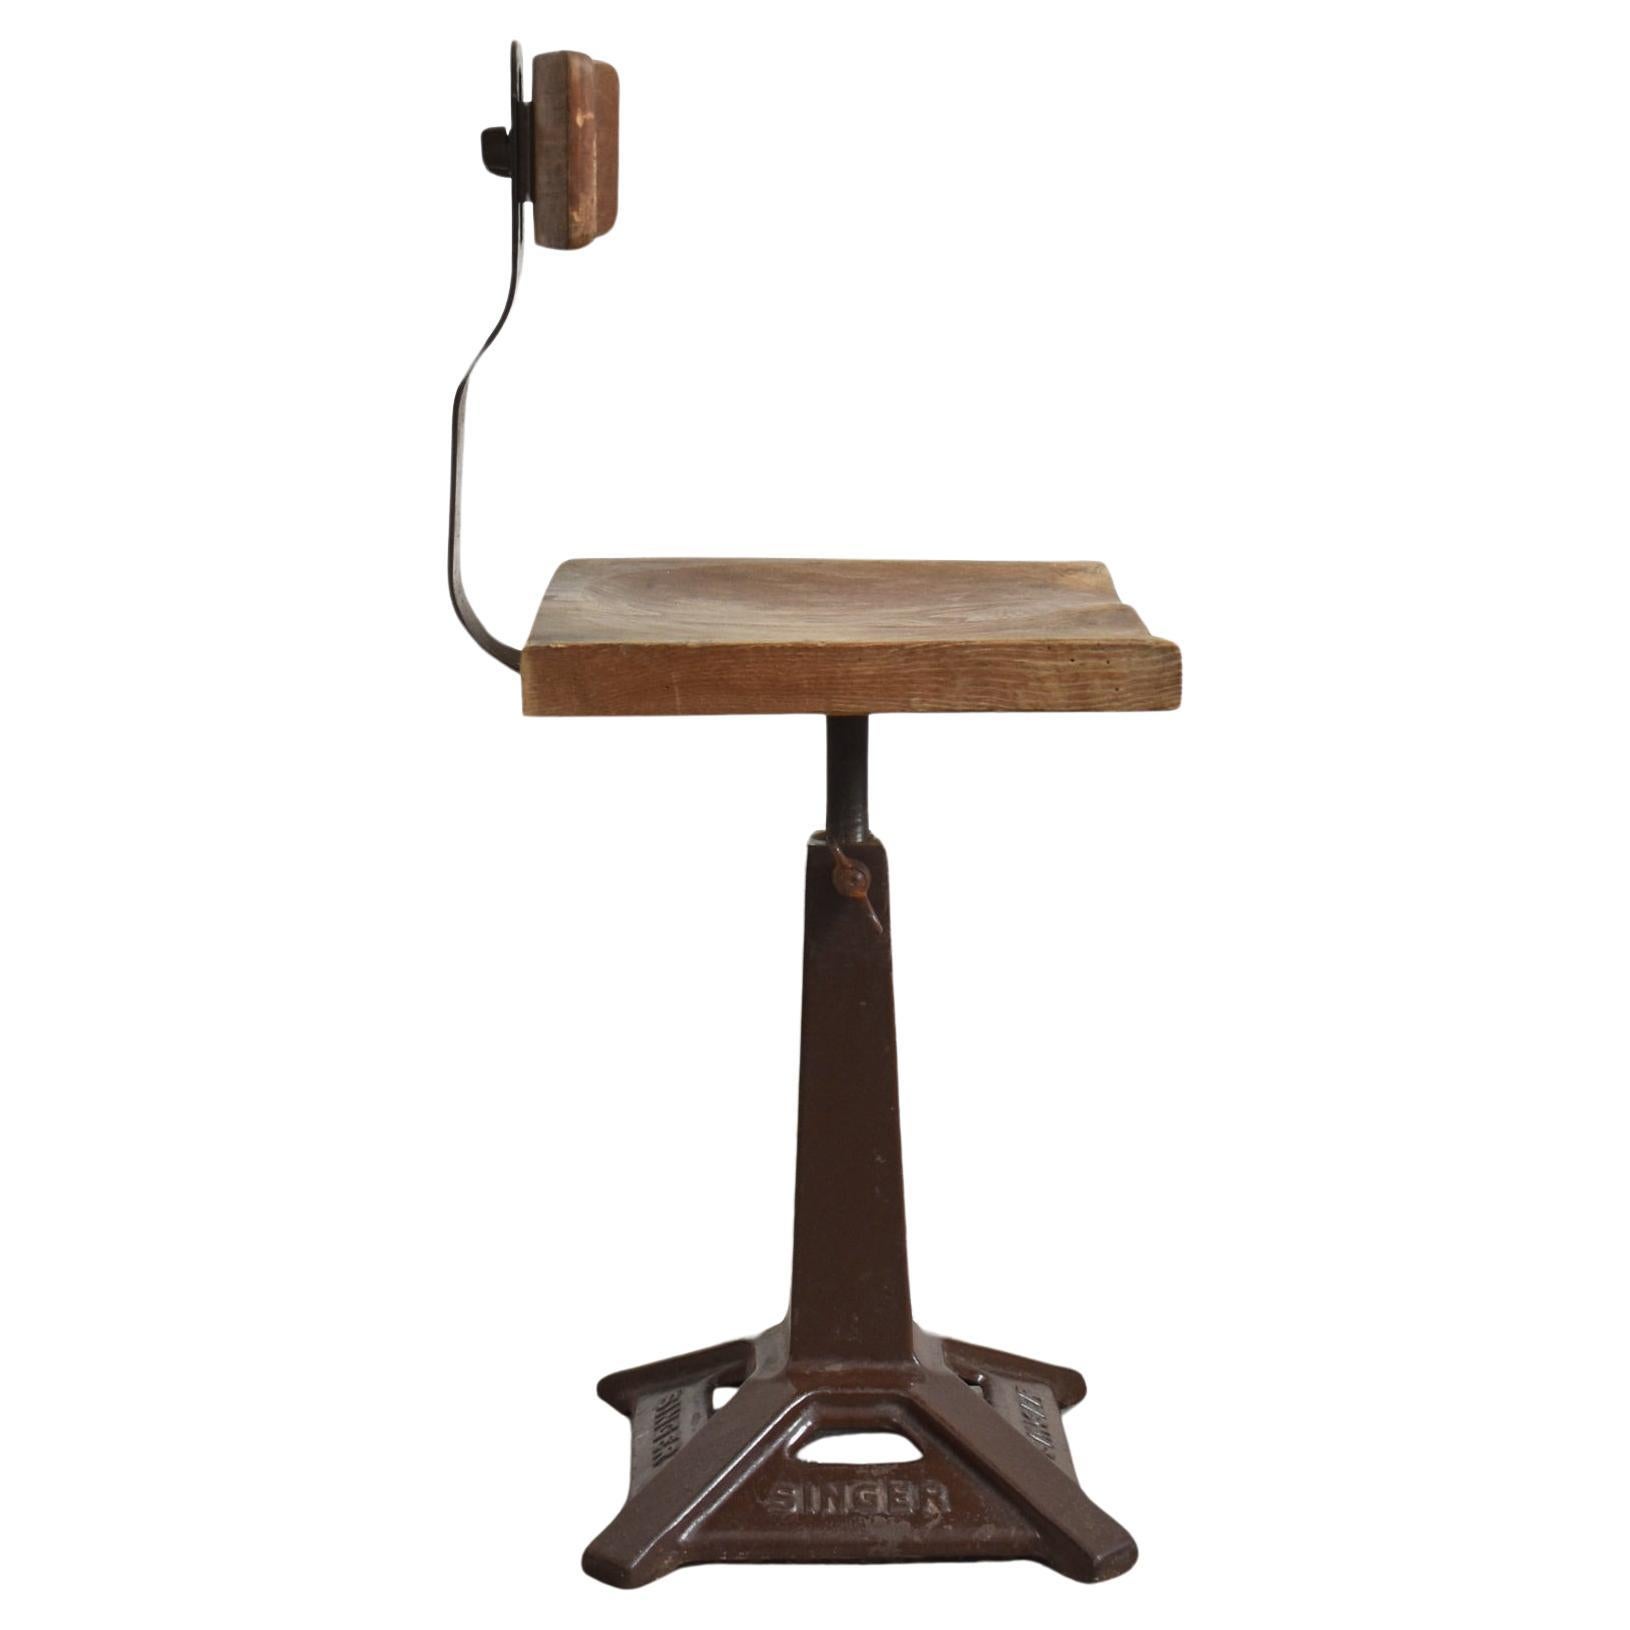 Chaise de bureau pivotante Singer antique - D

Tabouret d'ouvrier classique conçu et fabriqué par Singer. Au milieu du XIXe siècle, la société Singer est devenue mondialement célèbre grâce à son invention de la machine à coudre. En 1910,